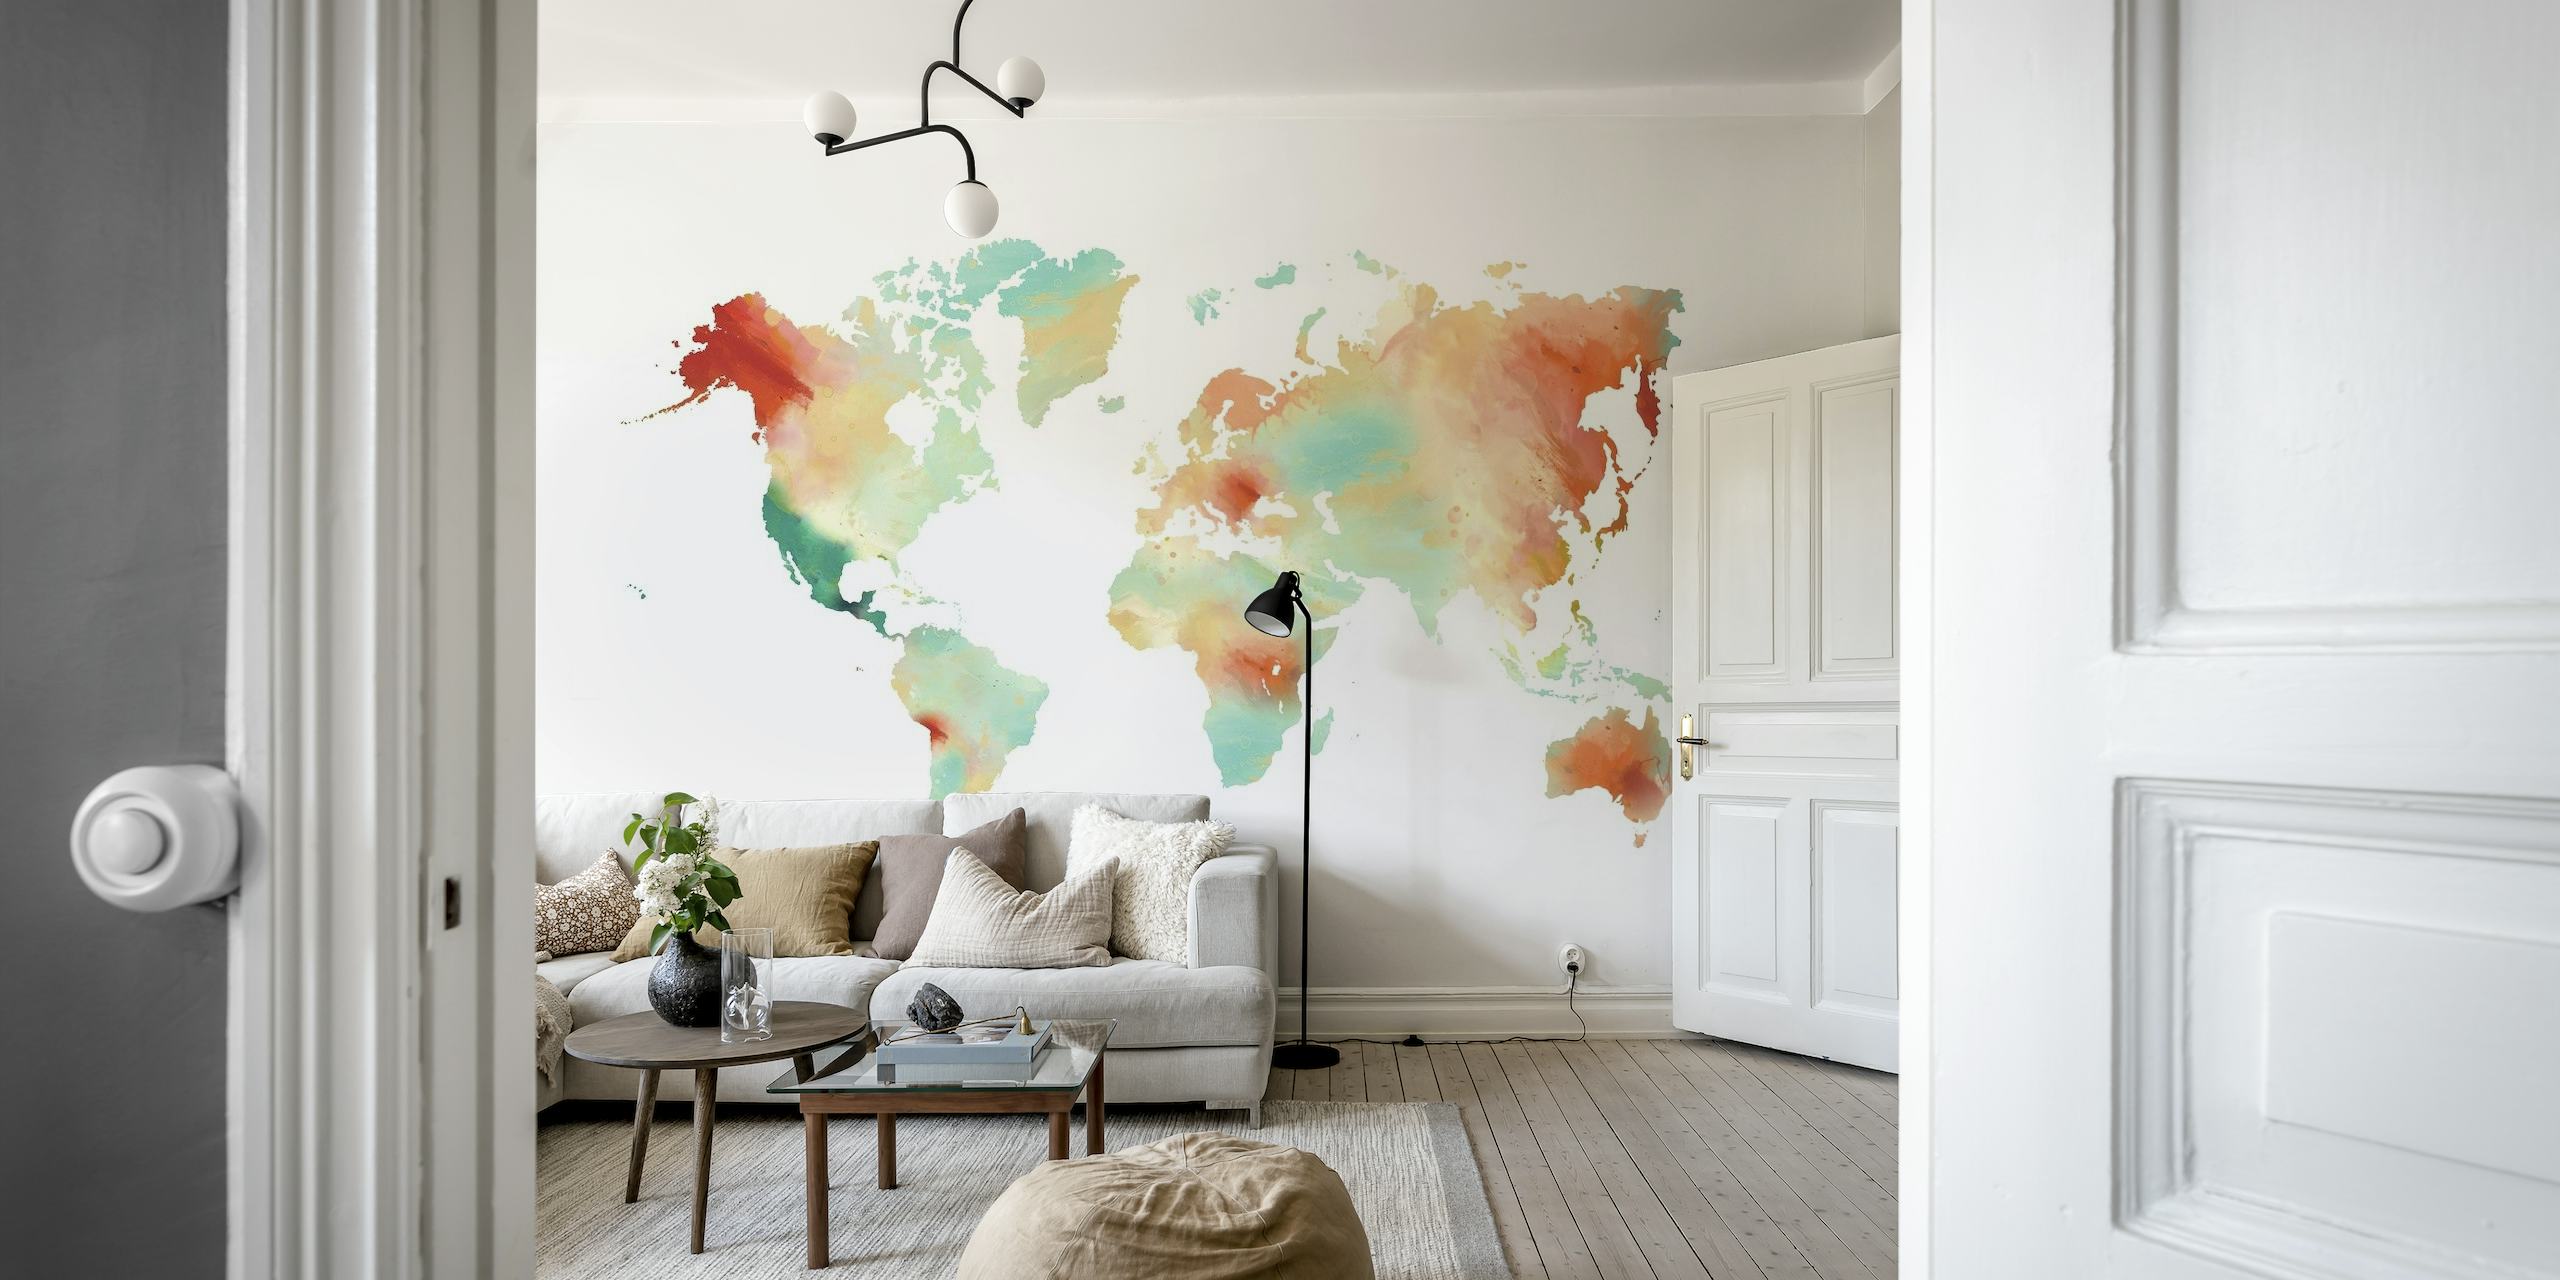 World Map Orange Teal papel pintado